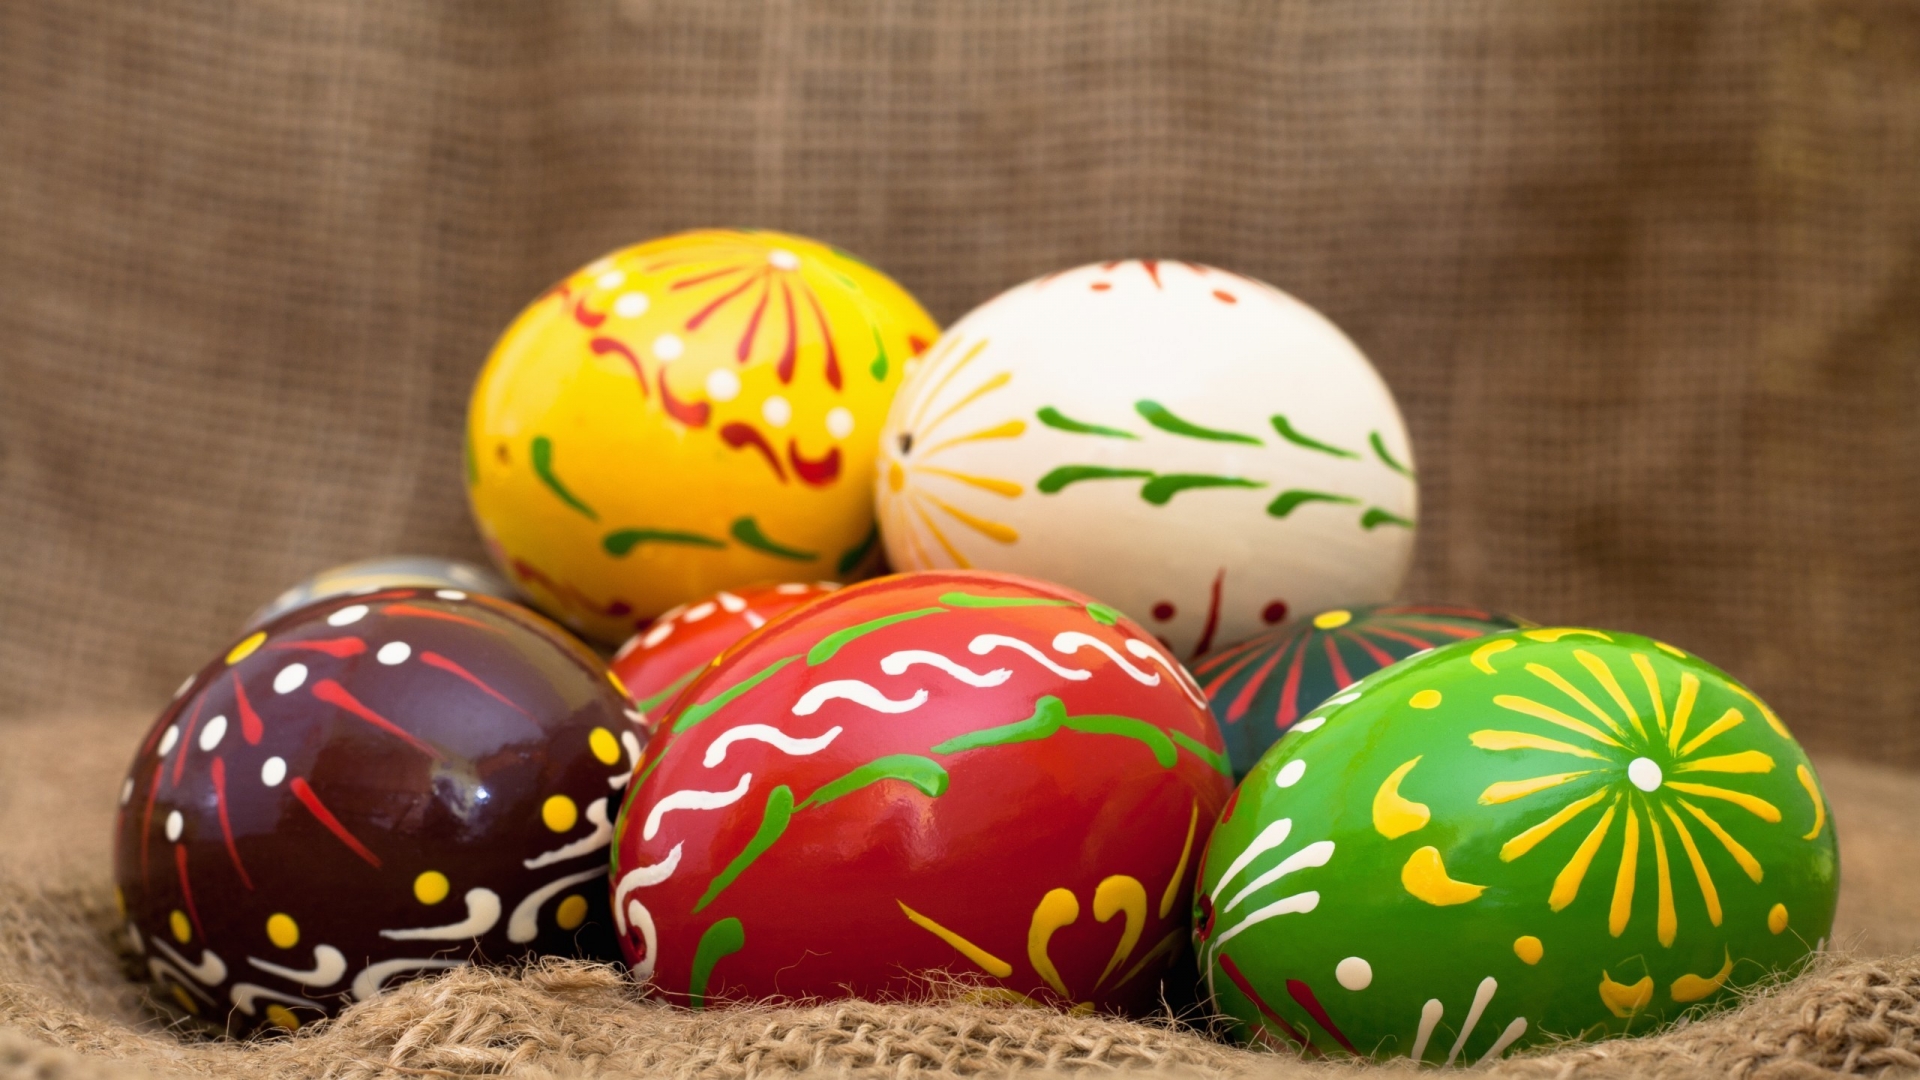 Handmade Easter Eggs for 1920 x 1080 HDTV 1080p resolution